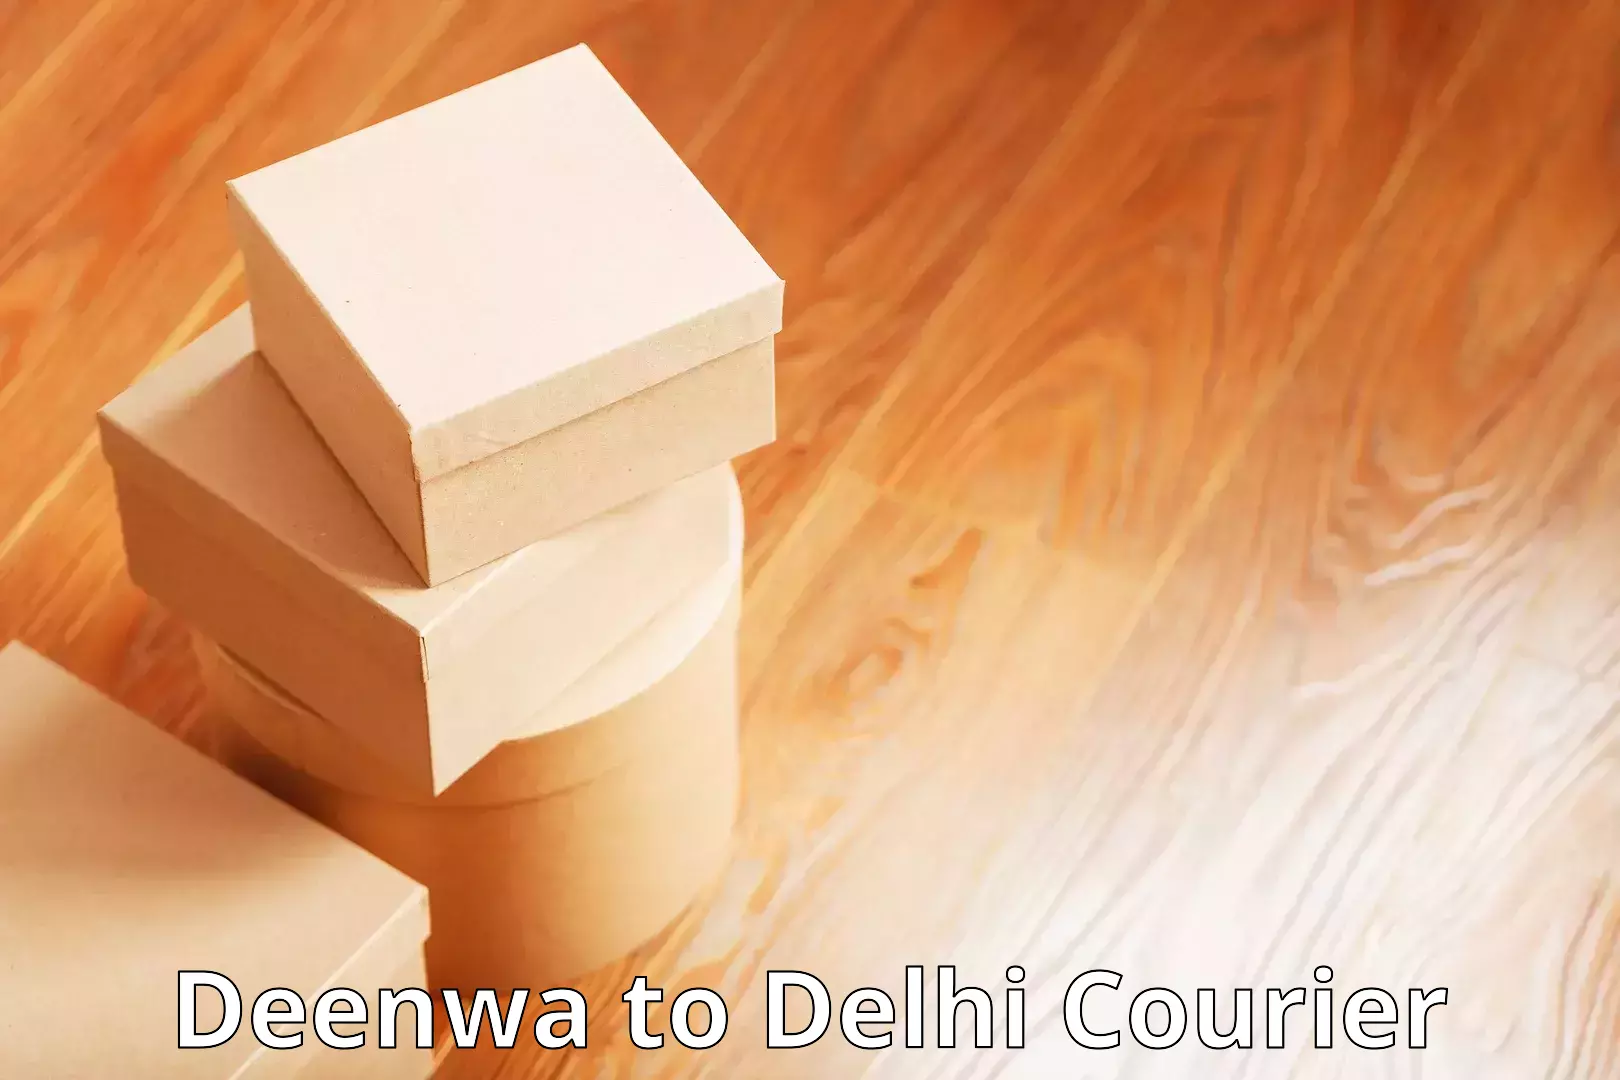 Global shipping networks Deenwa to Guru Gobind Singh Indraprastha University New Delhi